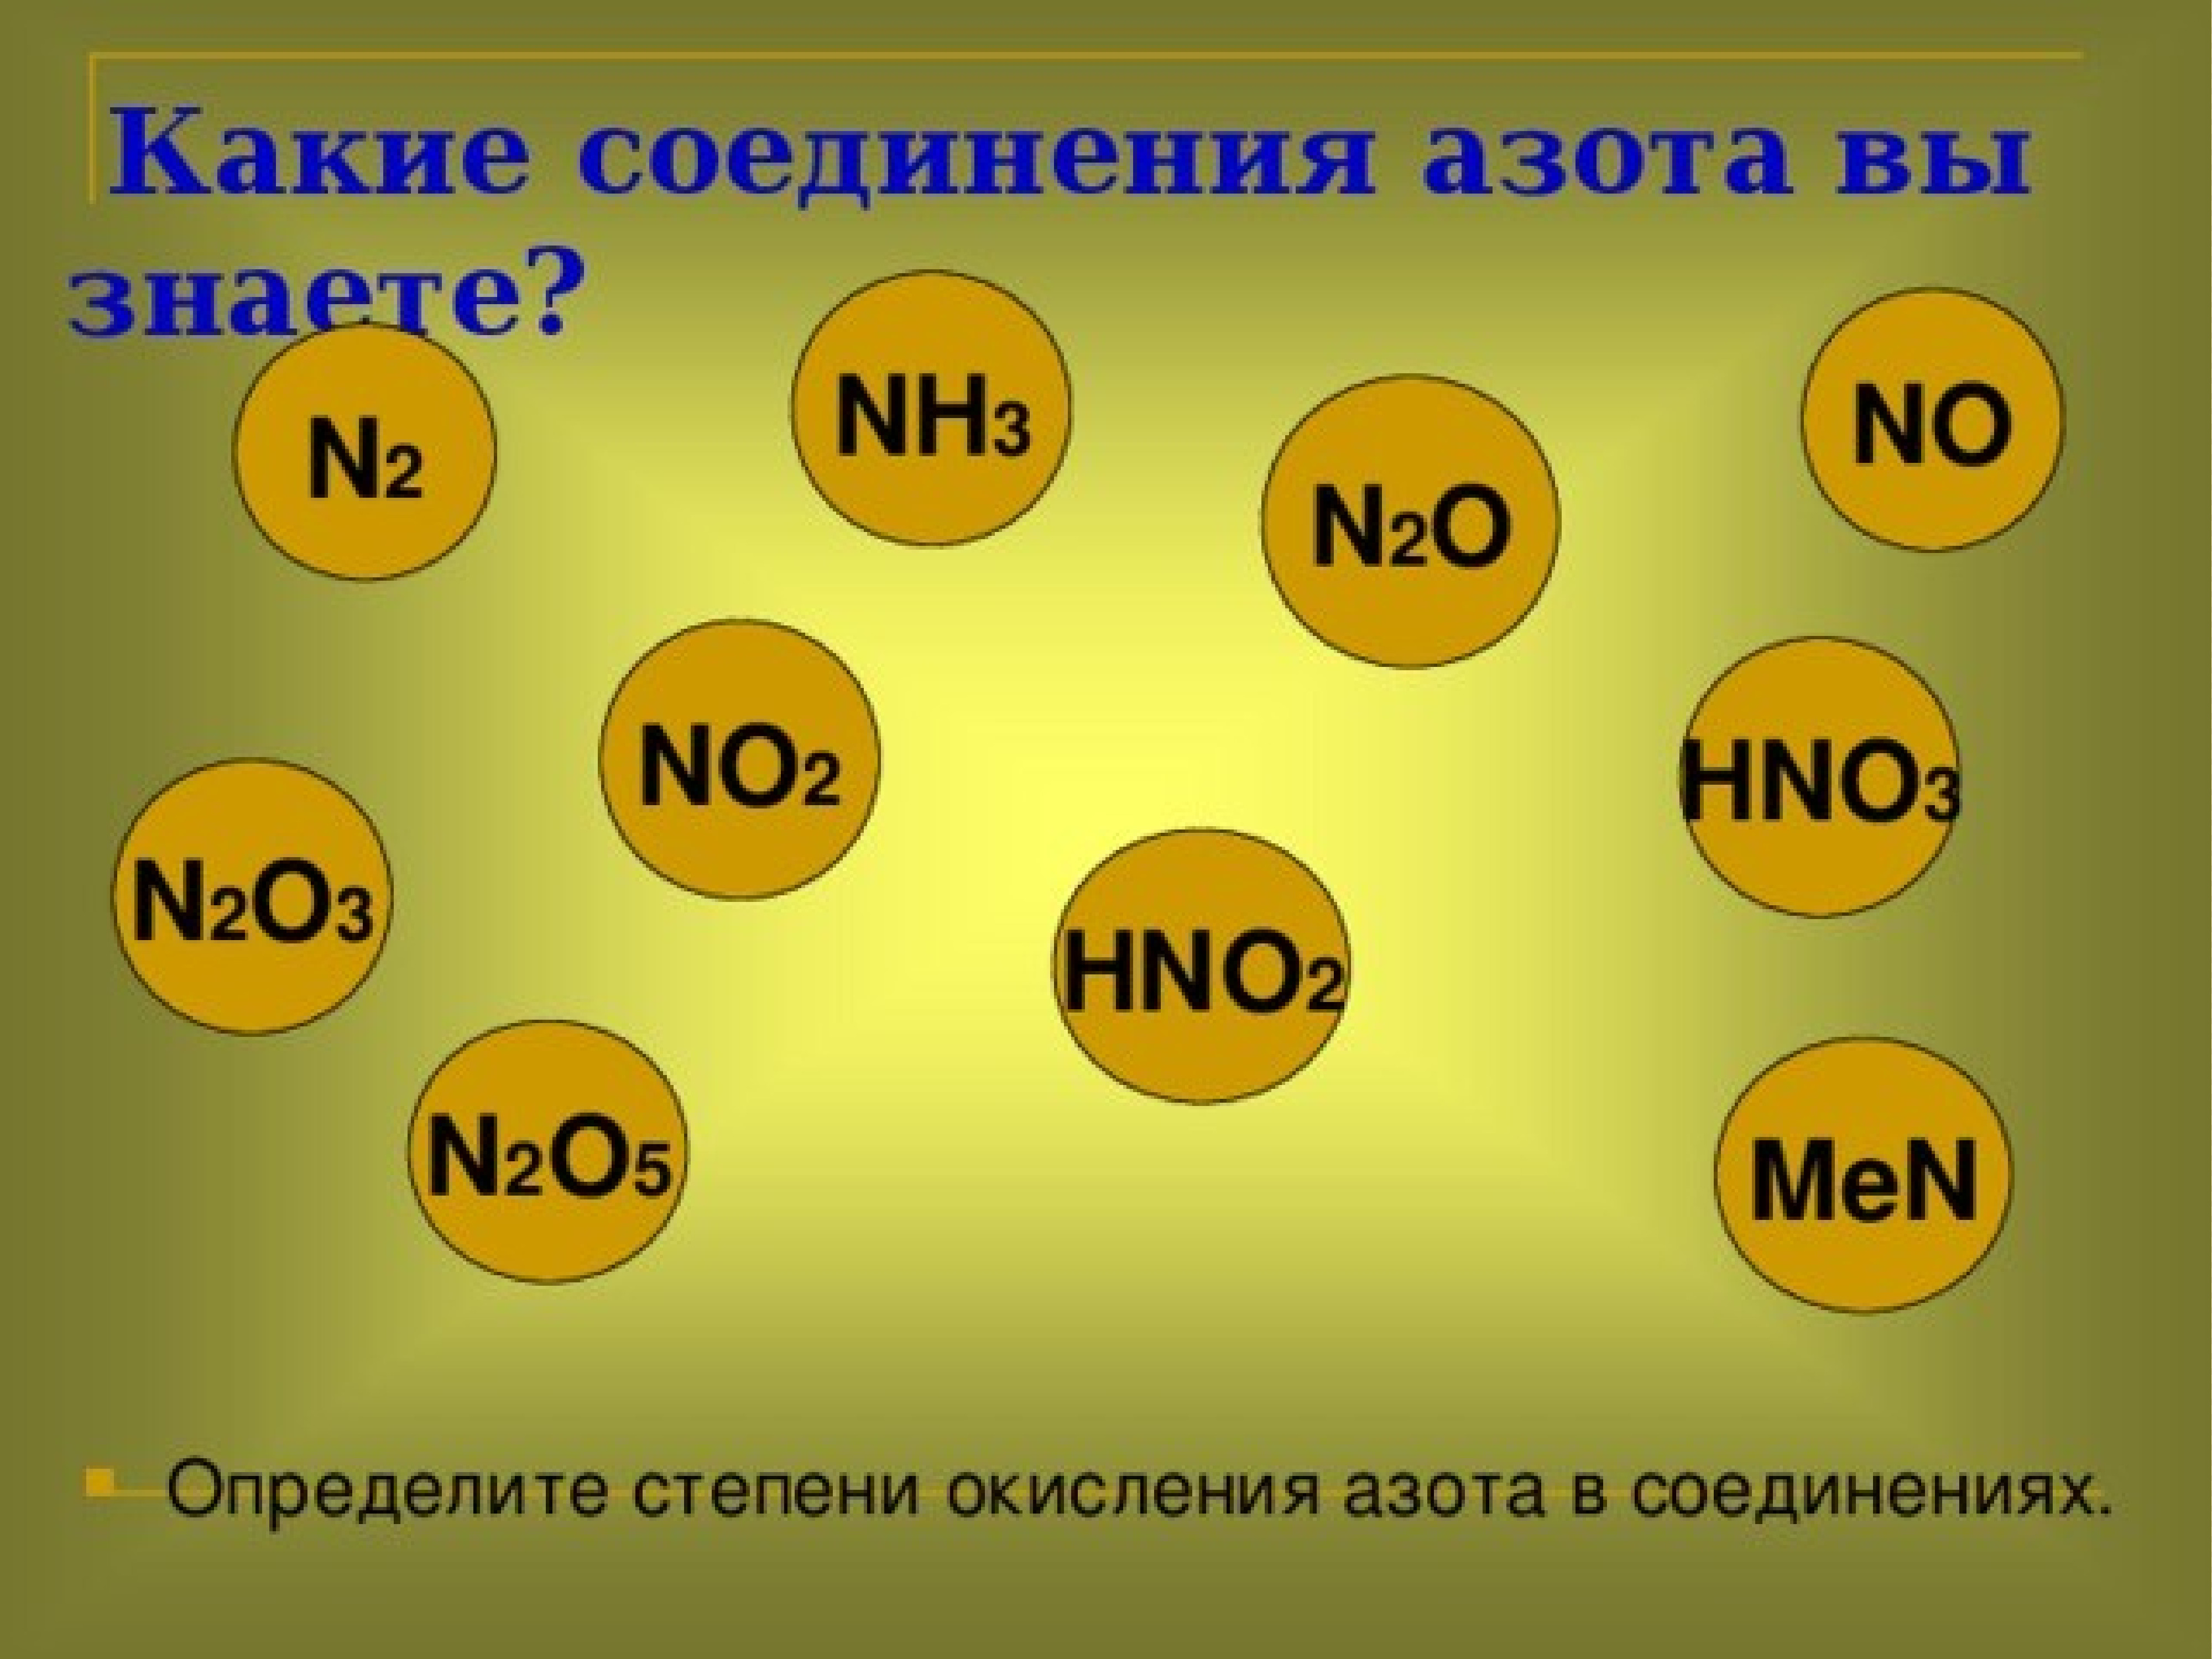 Степени окисления азота в соединениях n2o. N2o3 степень окисления азота. Hno3 степень окисления азота. Определите степени окисления азота в соединениях n2o. Степень окисления азота в соединениях n2o5.